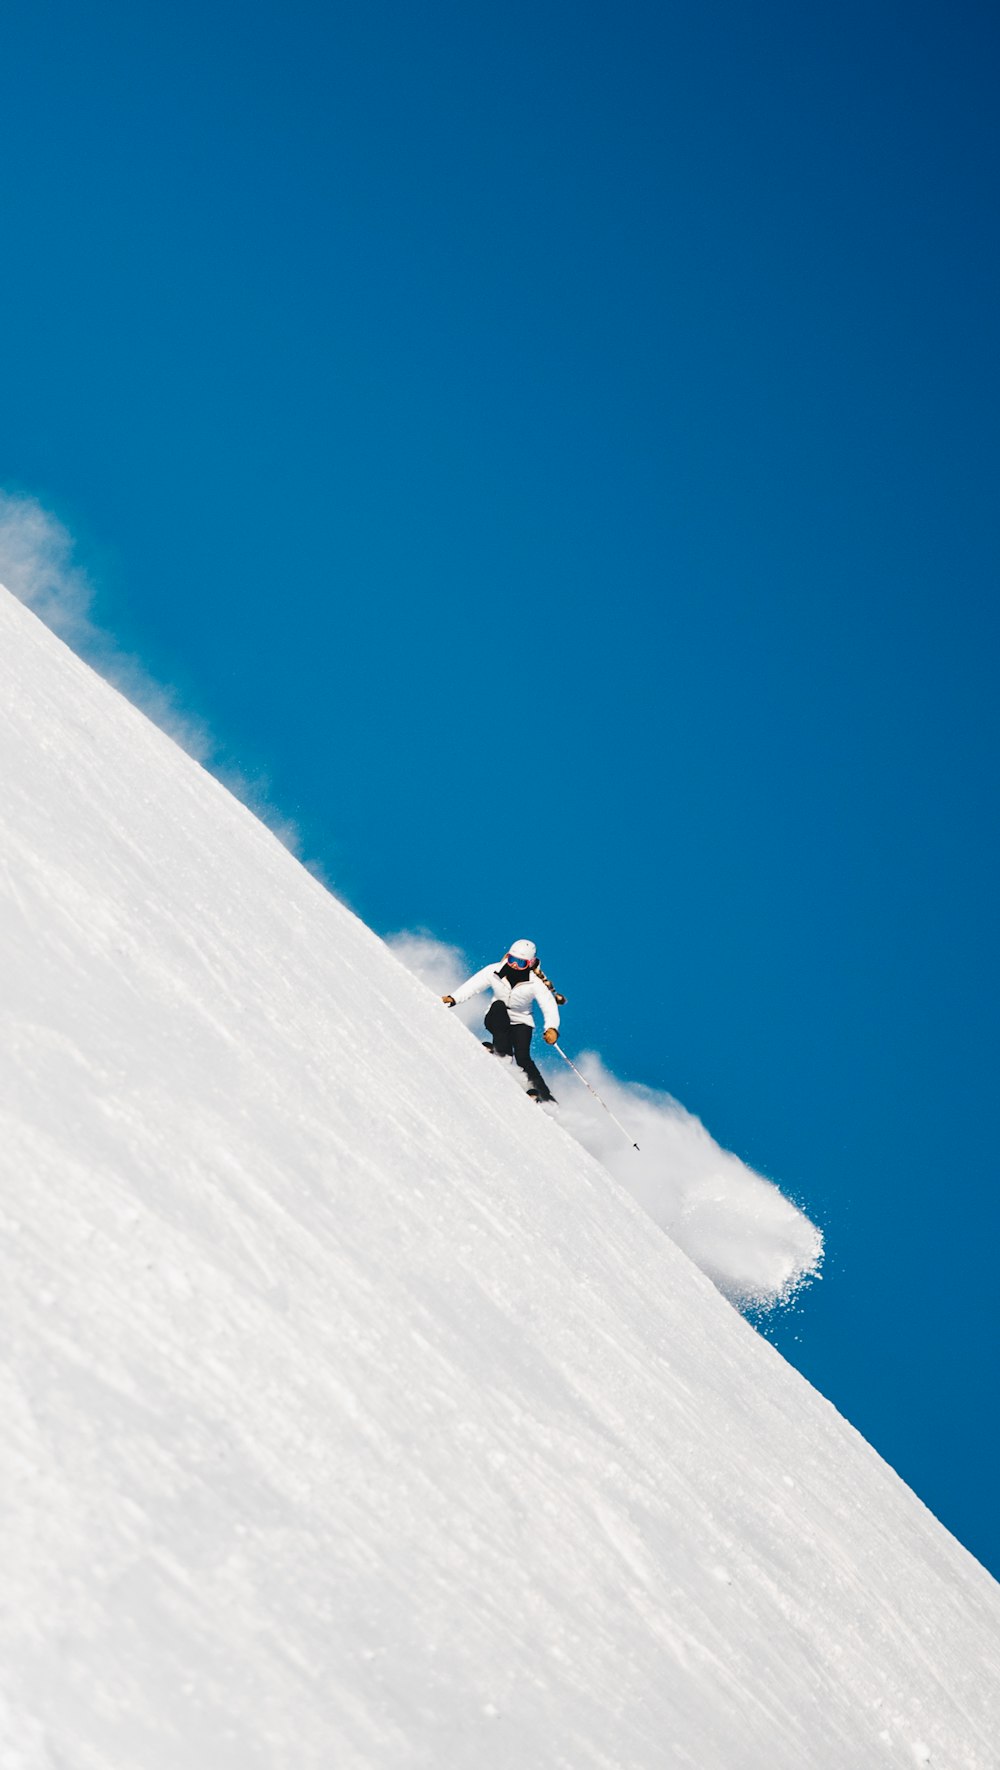 Pessoa snowboard no penhasco da montanha